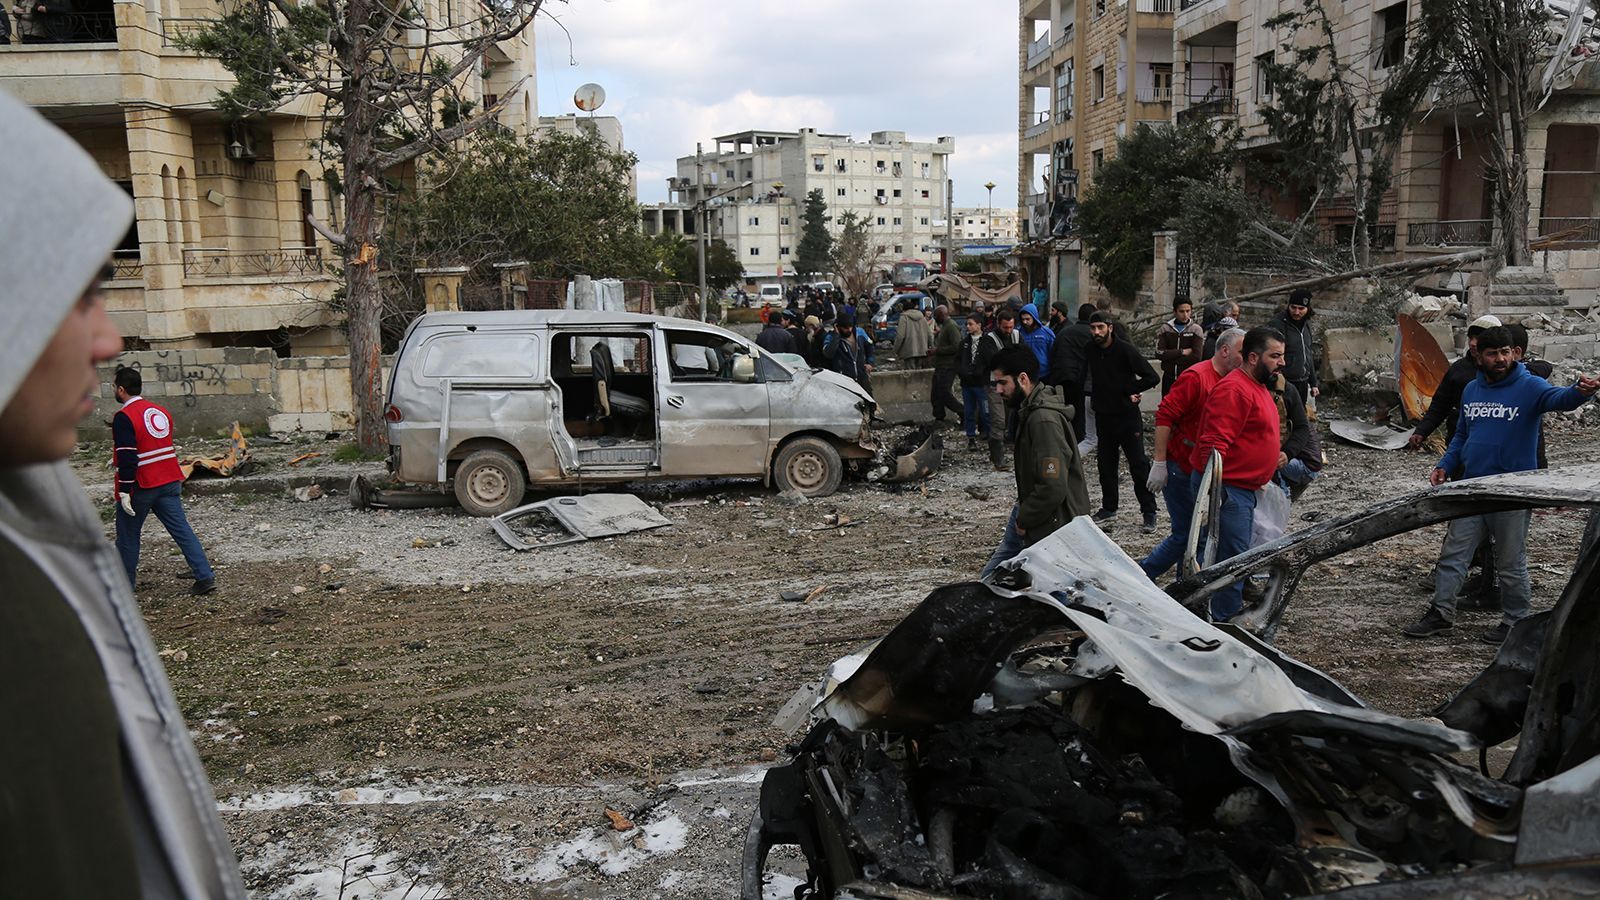 В Сирии произошел двойной теракт, много погибших: фото и видео 18+